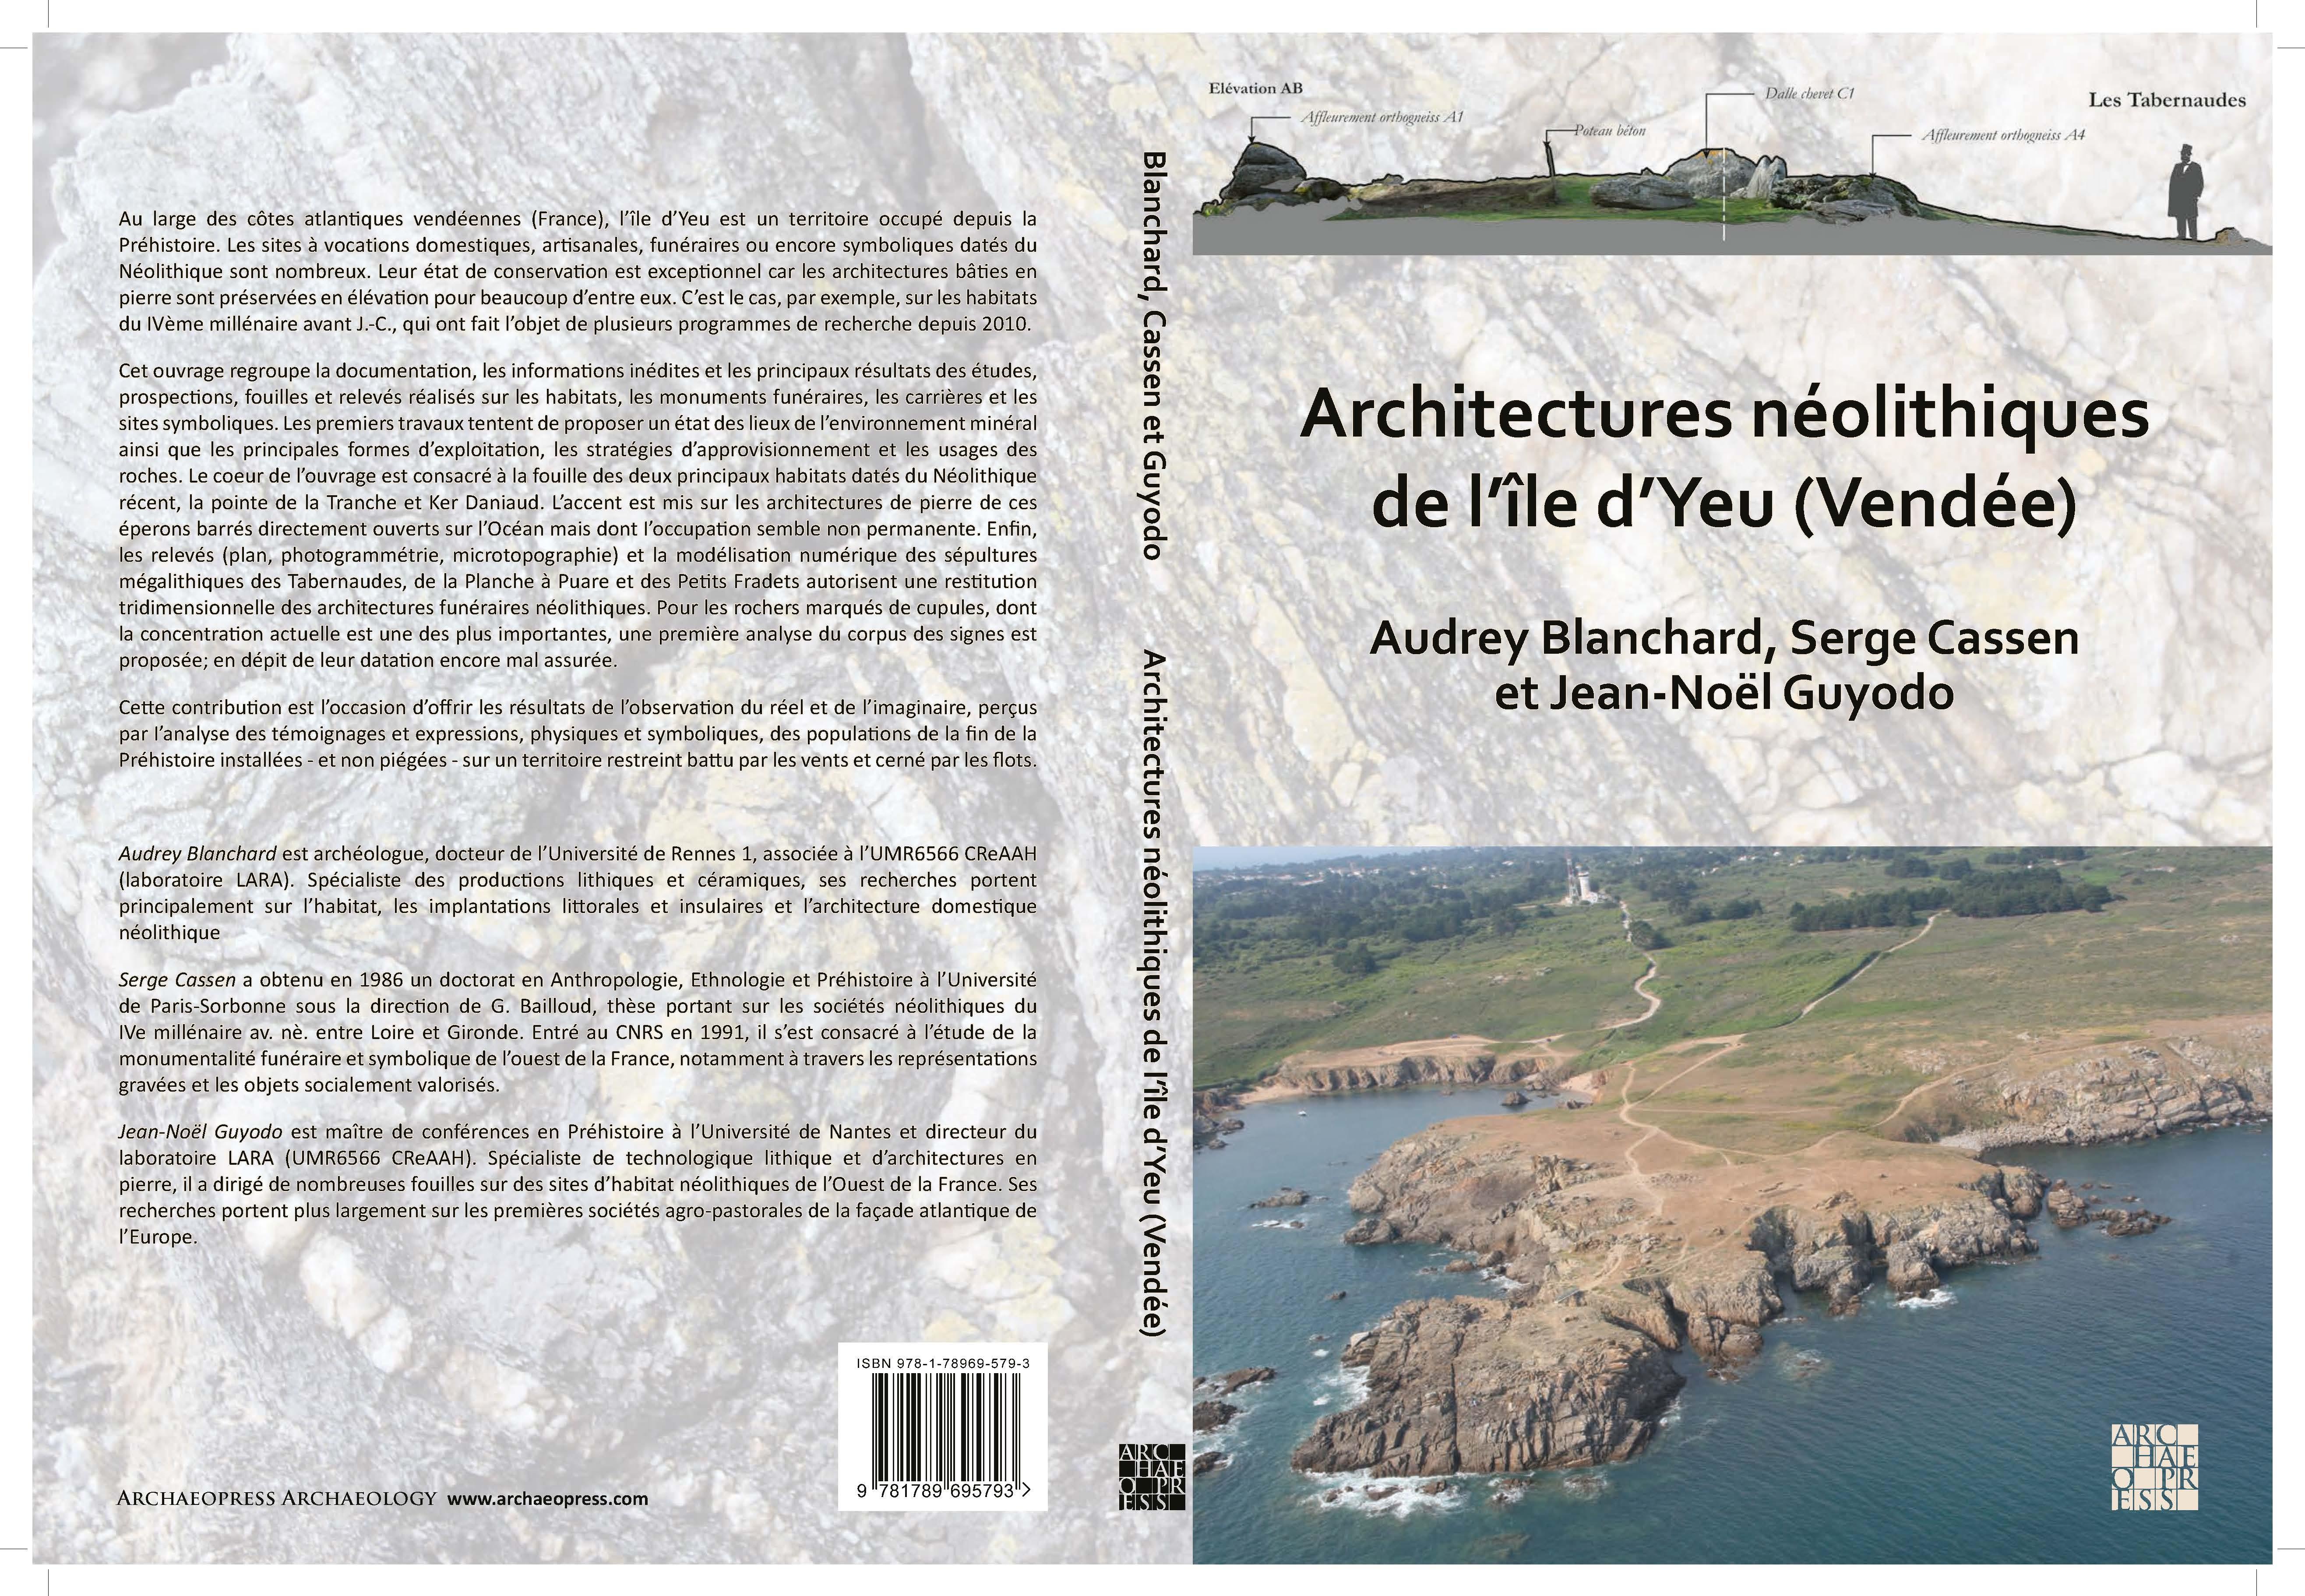 Architectures néolithiques de l'île d'Yeu (Vendée)